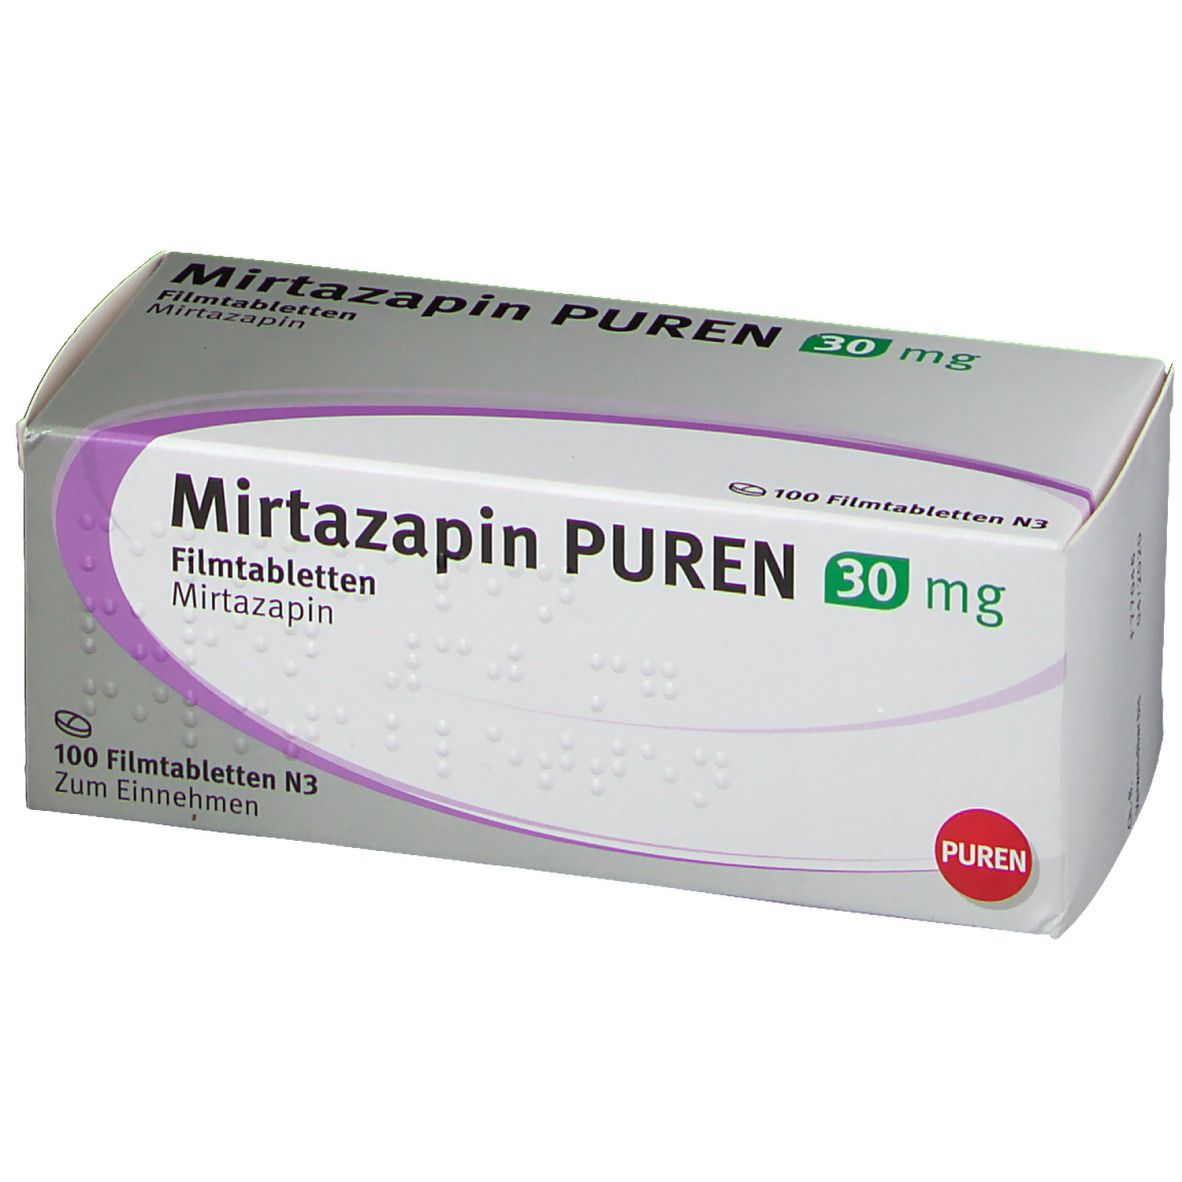 Mirtazapin PUREN 30 mg